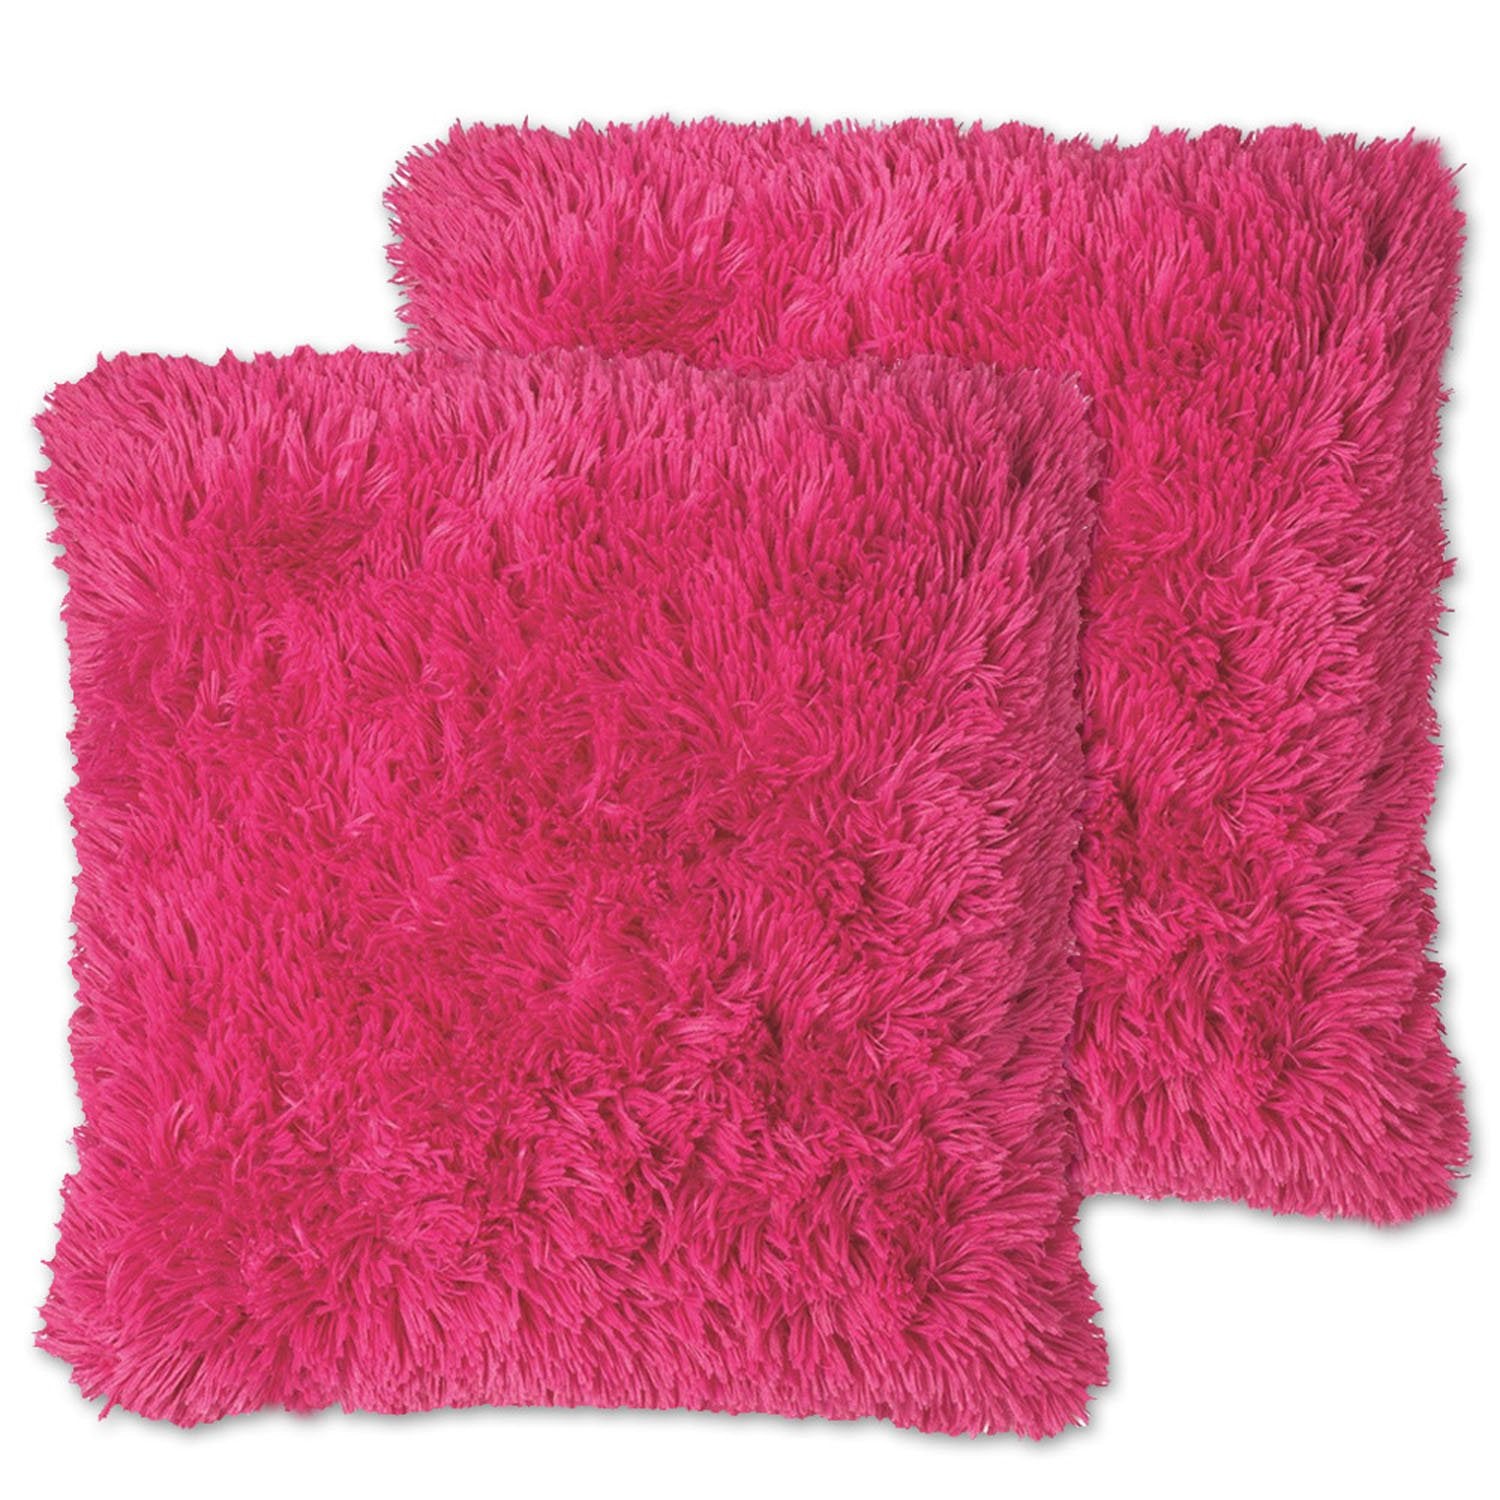 Decorative Plush Throw Pillows Hot Pink - Top